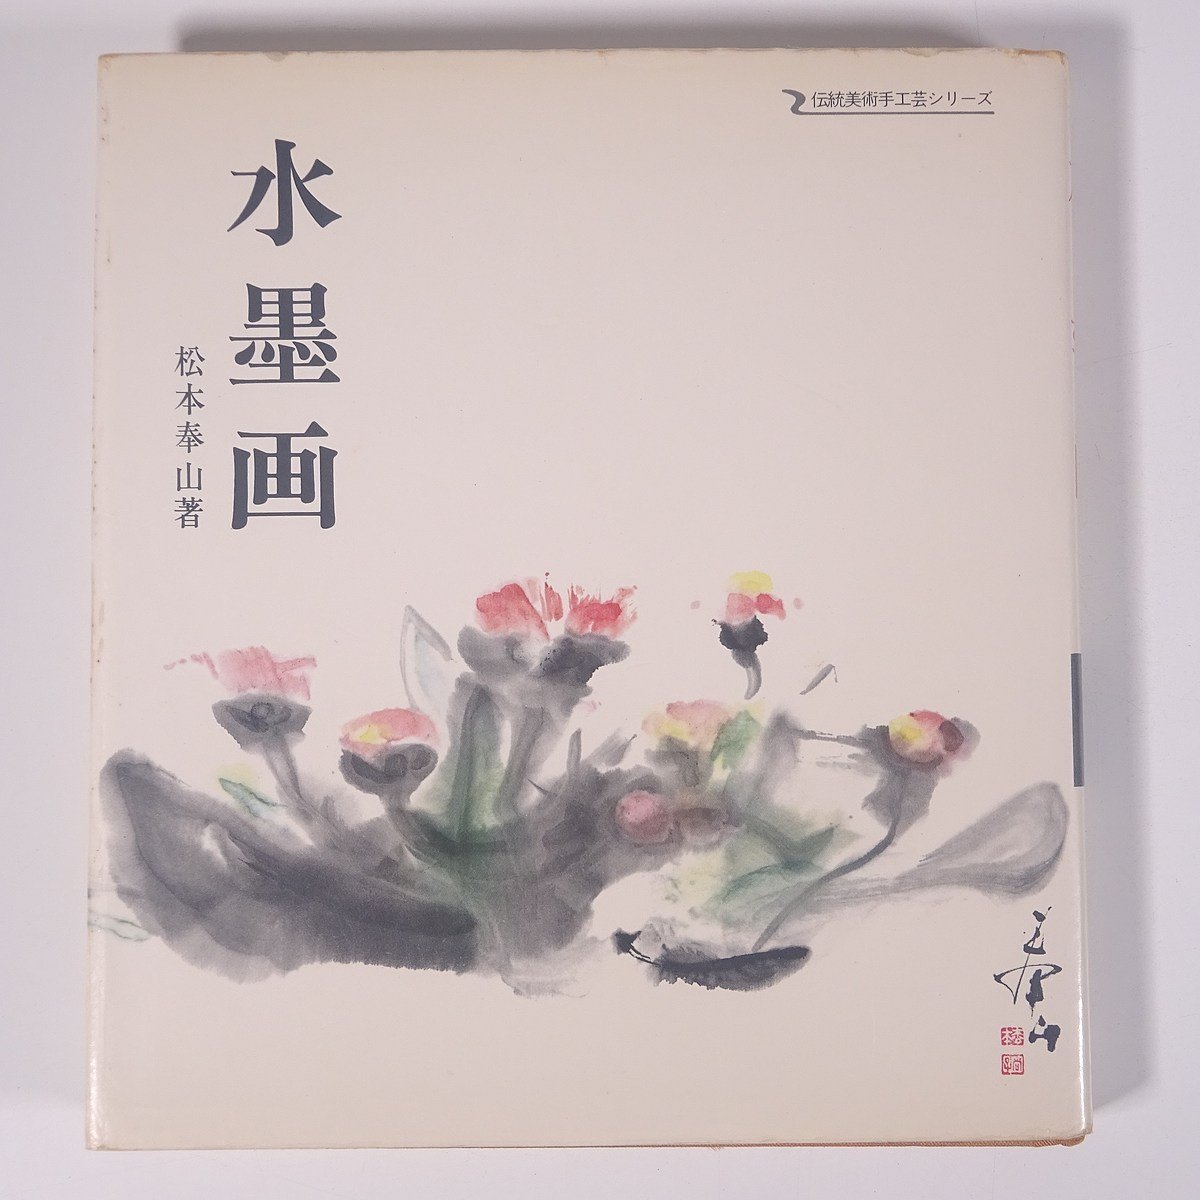 मात्सुमोतो होज़ान द्वारा स्याही चित्रकला, पारंपरिक कला और शिल्प श्रृंखला, मकोशा, 1978, हार्डकवर, कला, कला, चित्रकारी, जापानी चित्रकला, स्याही पेंटिंग, सुमी-ए, चित्रकारी, कला पुस्तक, संग्रह, सूची